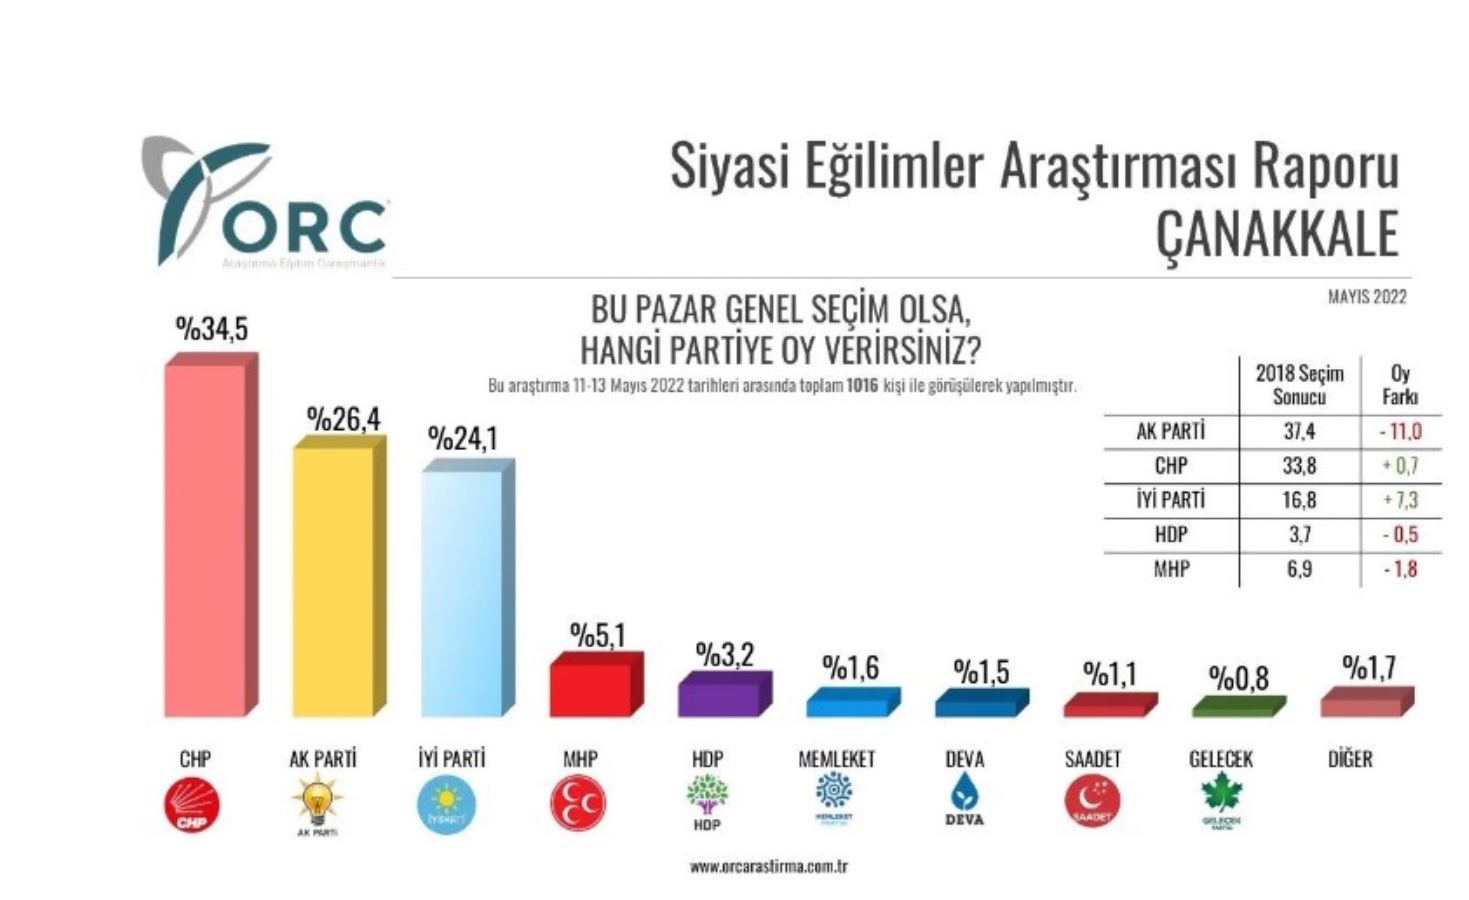 <p>Yüzde 34,5 oy oranıyla Çanakkale'de ilk sırada CHP yer alırken, AKP'nin oy oranı ise yüzde 26,4 olarak kayda geçti. Üçüncü sıradaki İYİ Parti ise yüzde 24,1 aldı.</p>